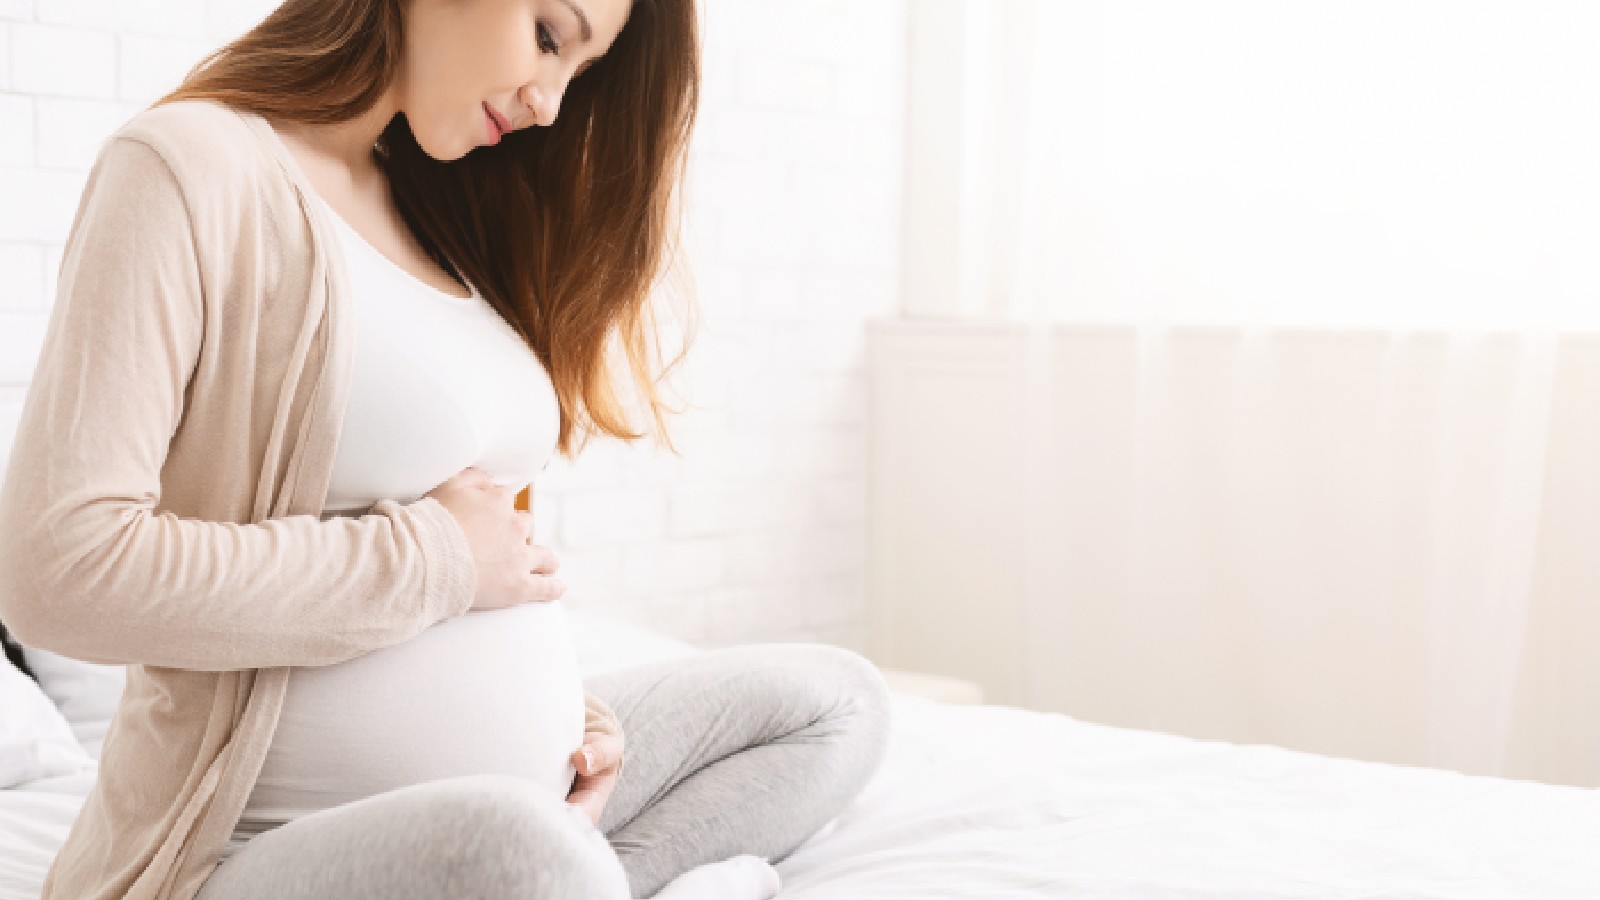 गर्भावस्था के दौरान होने वाले कुछ लक्षण गंभीर होते हैं।